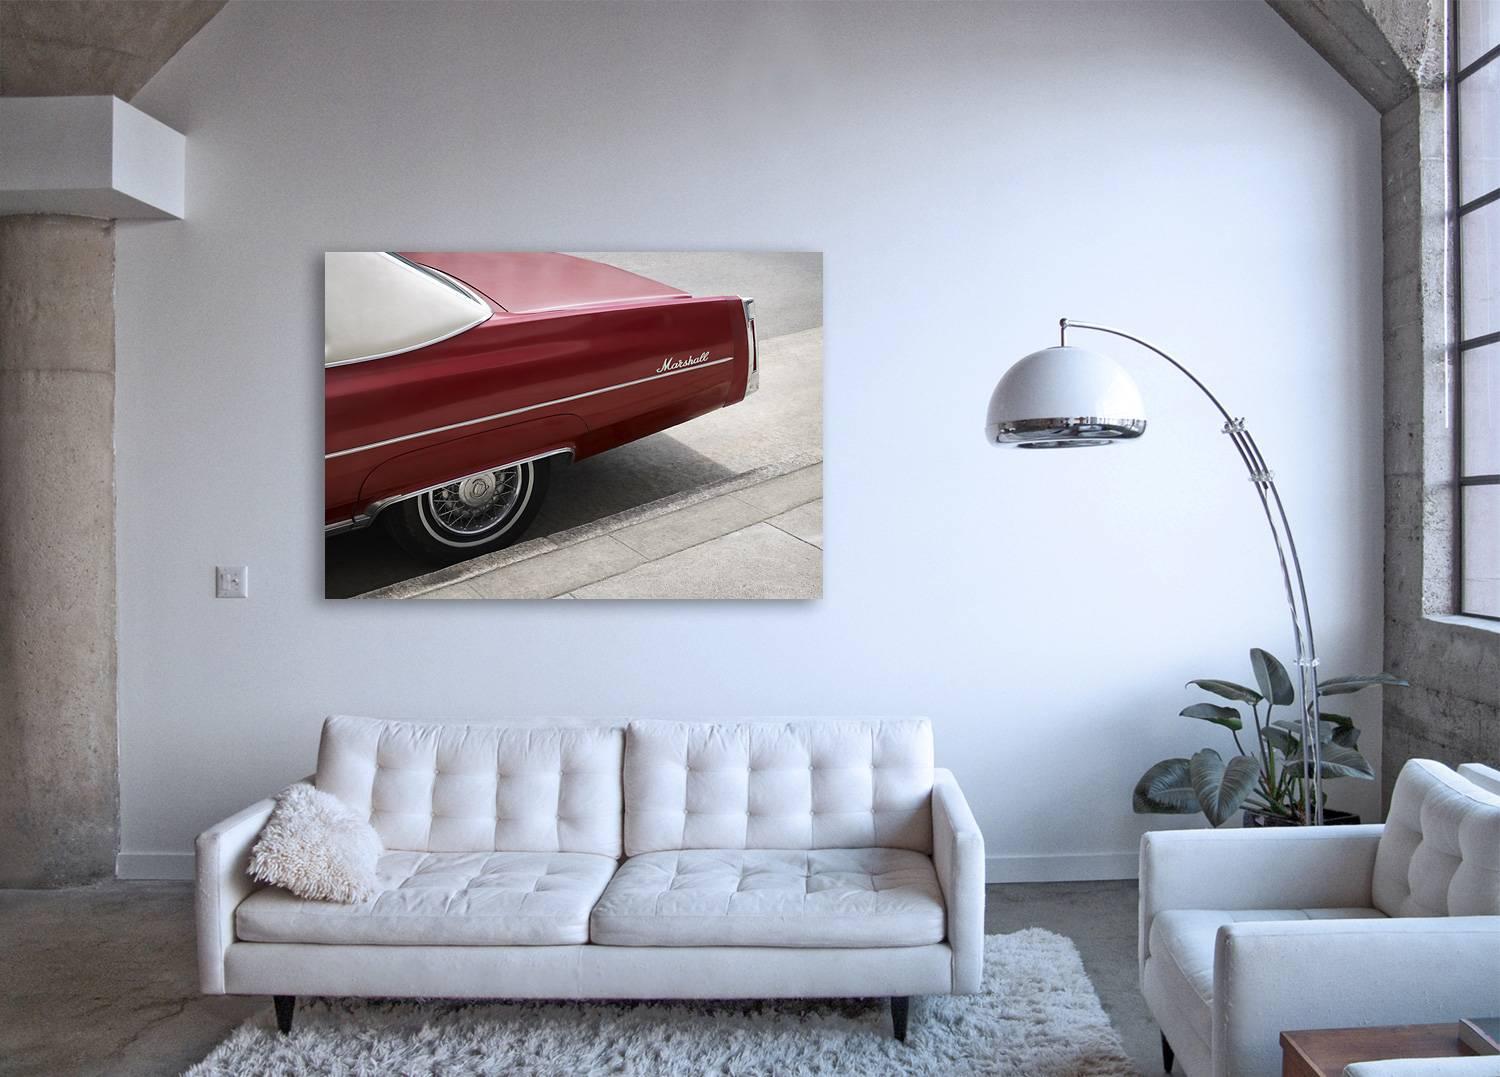 Marshall - Großformatiges Foto eines ikonischen Kirschroten Cadillac-Autos – Print von Frank Schott